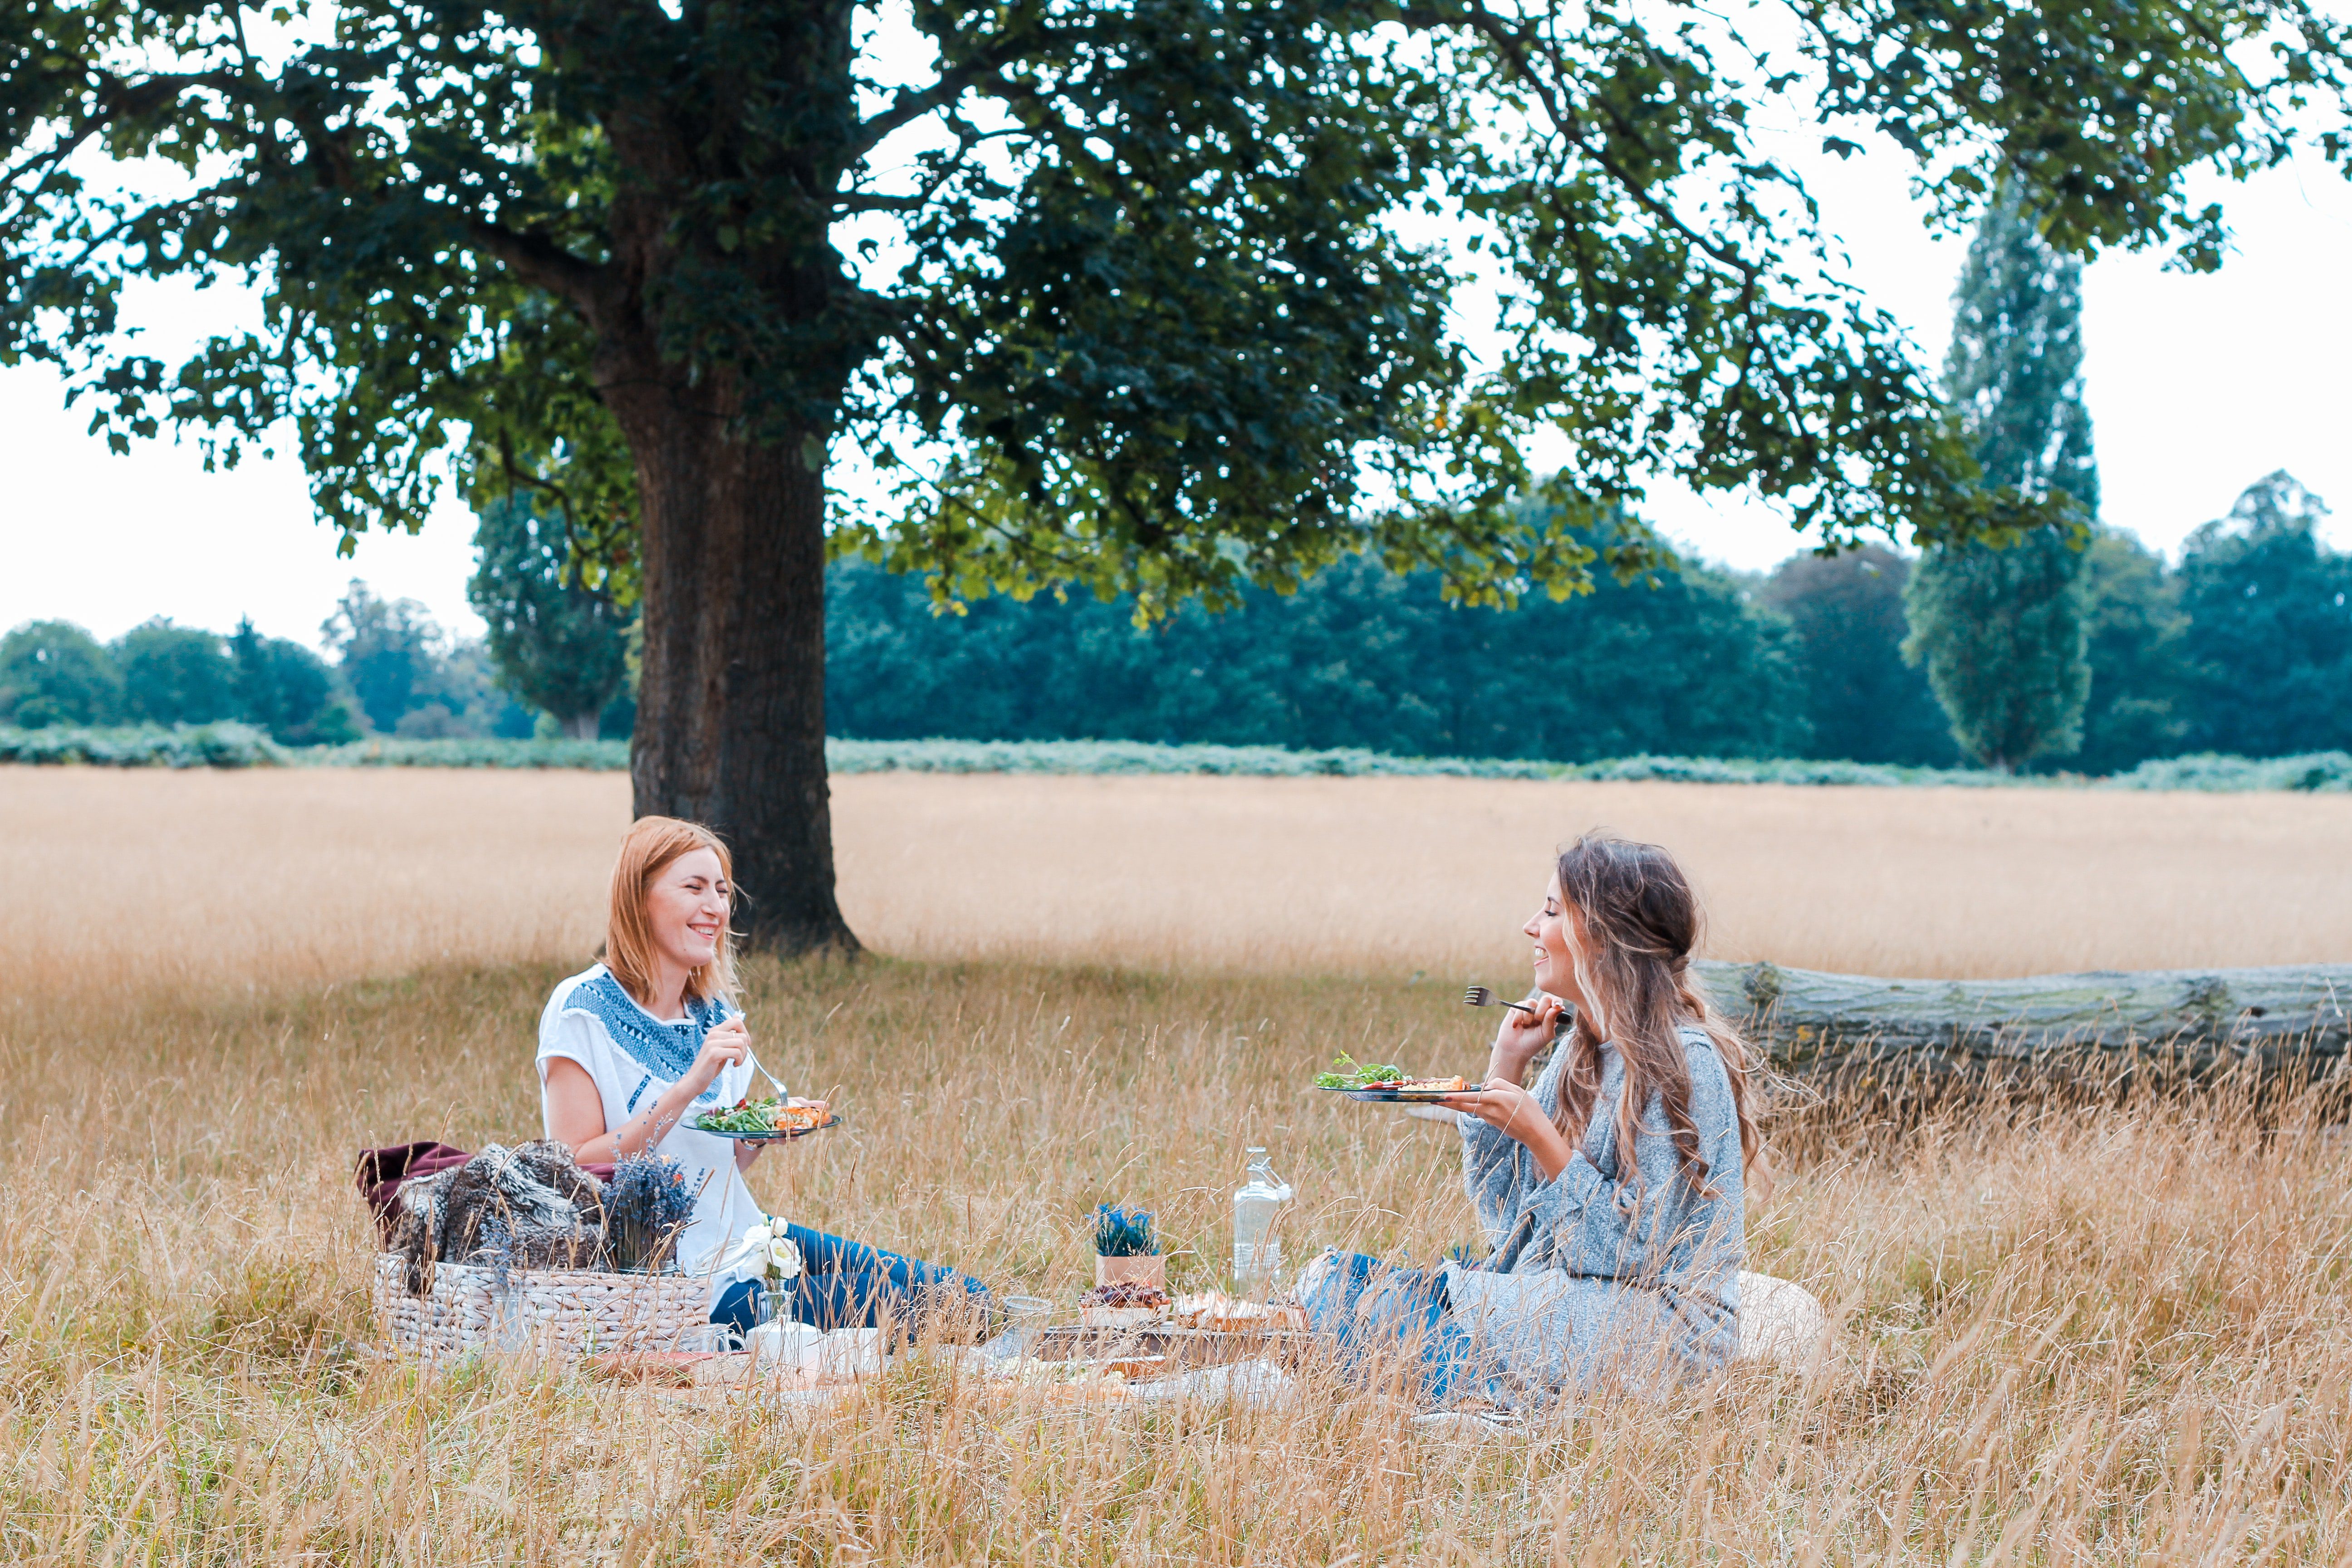 Two women in a field having a picnic